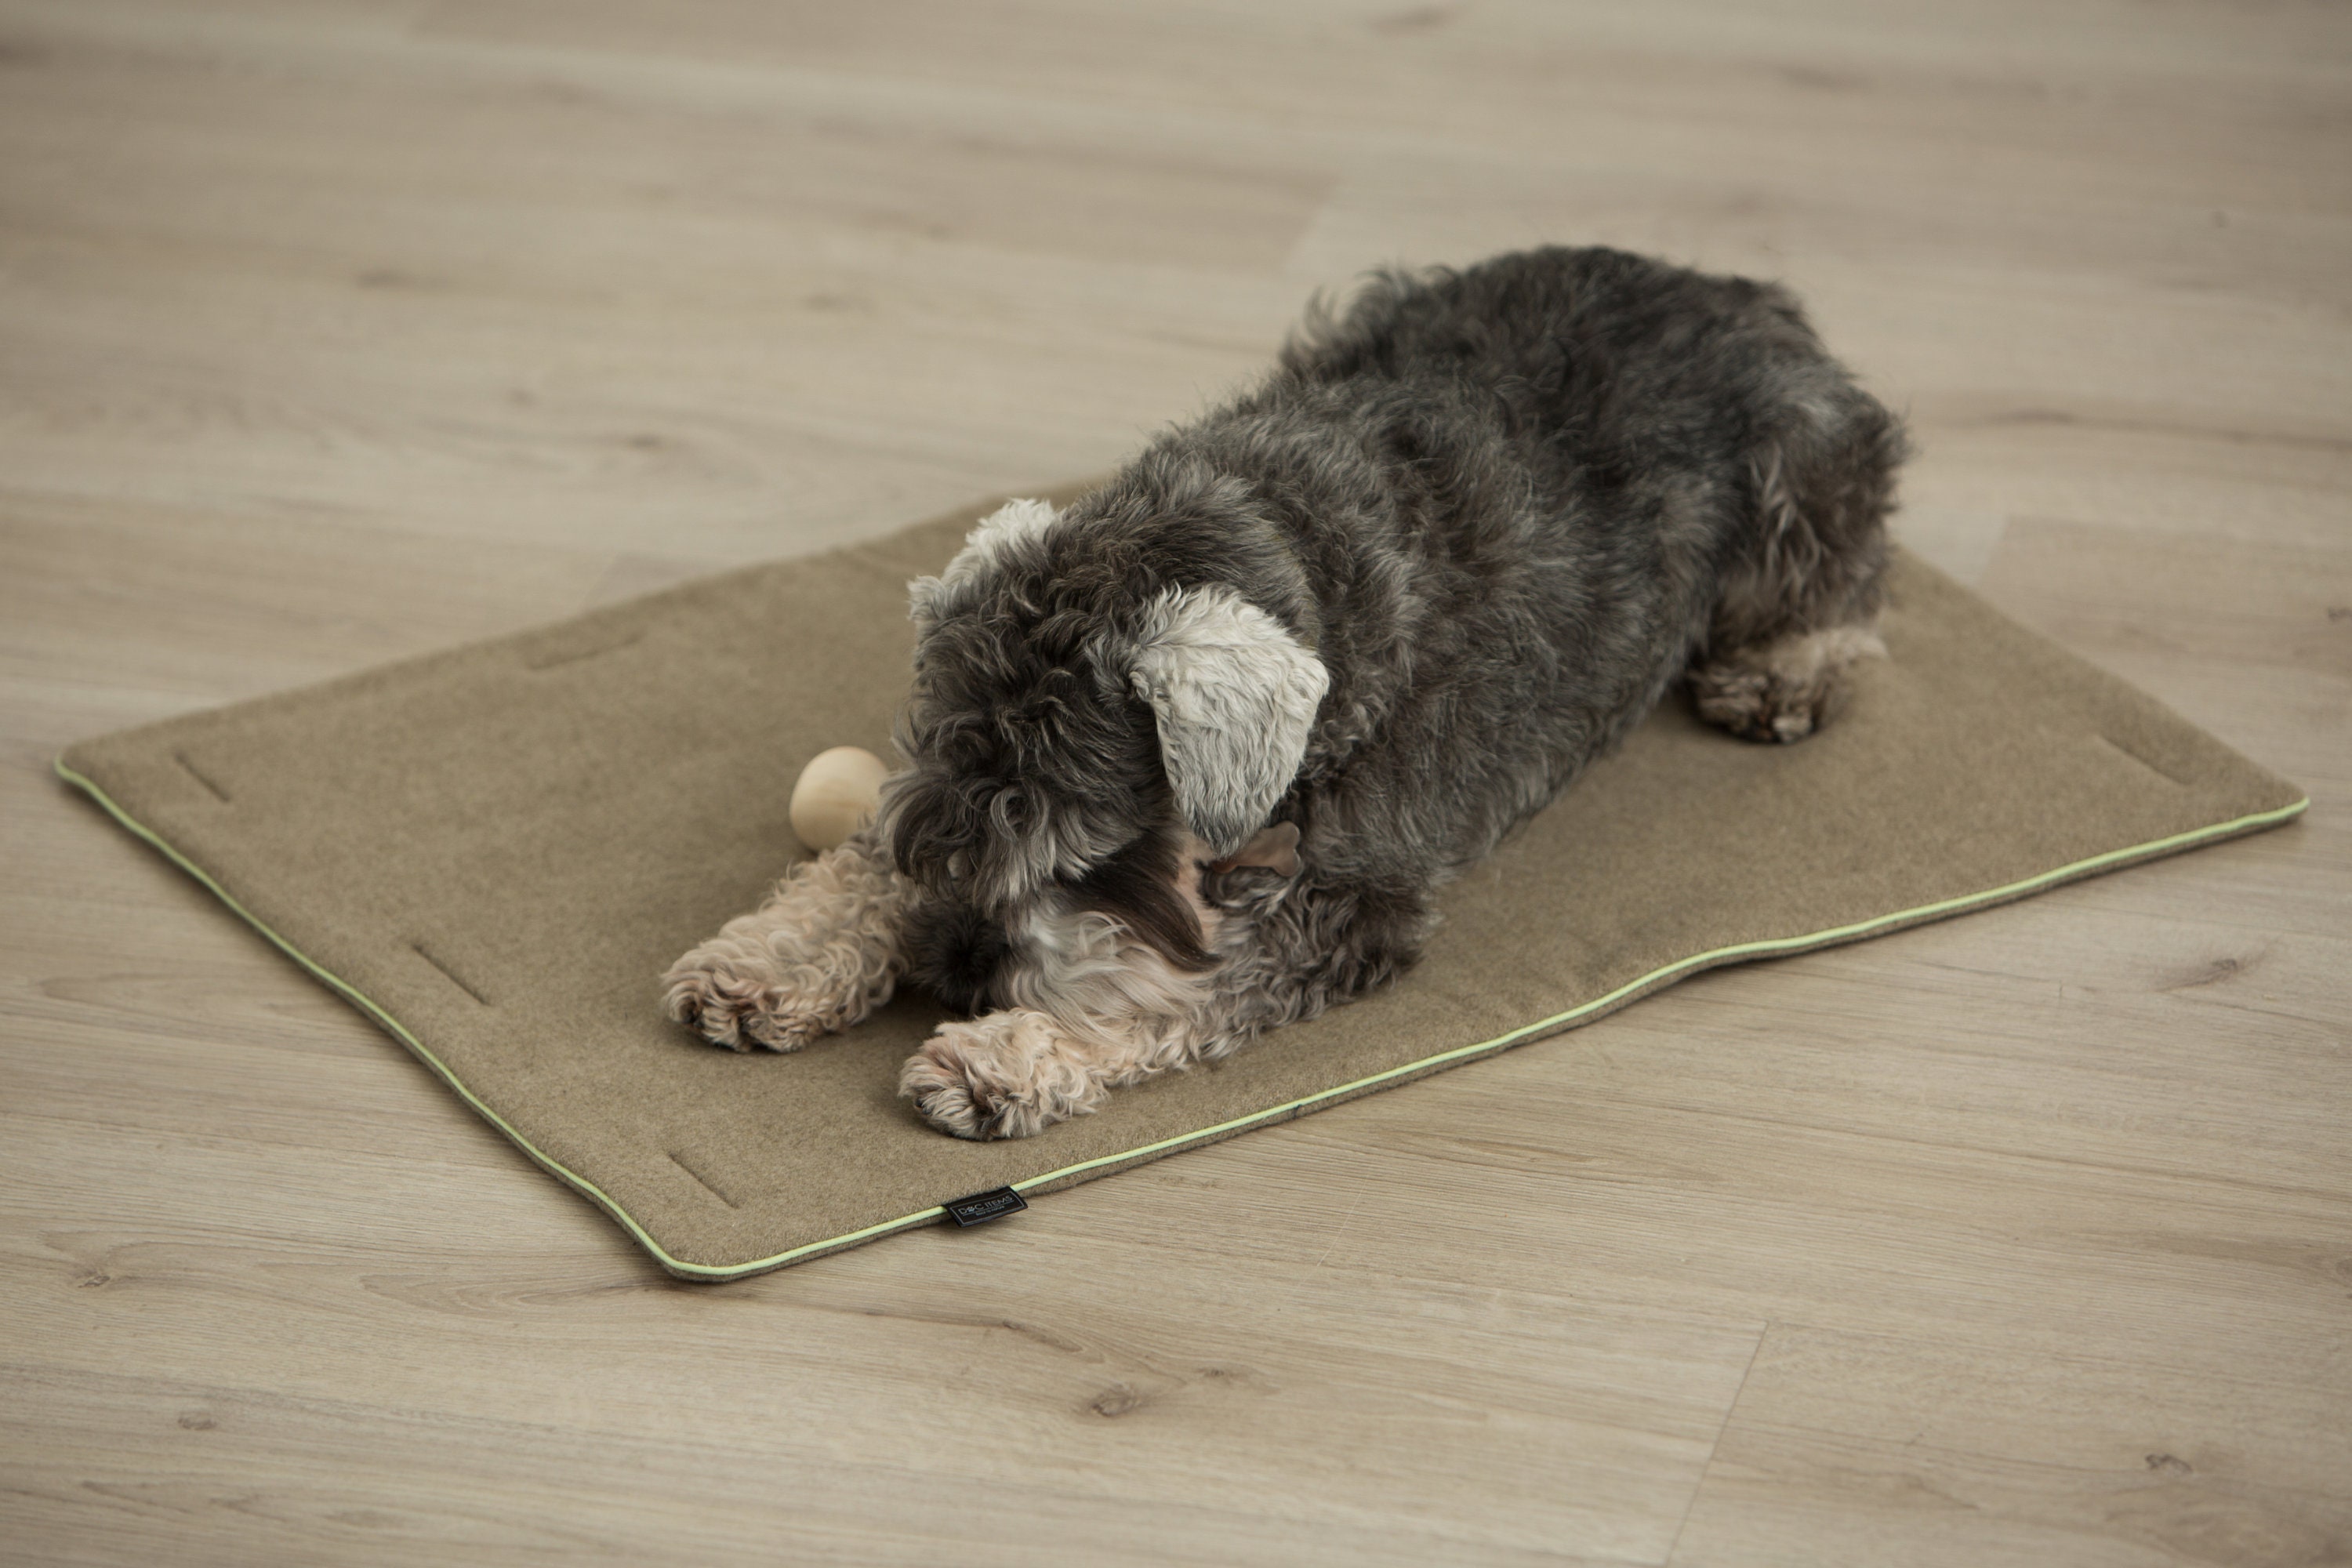 Big Sky Nap® Dog Mat, Dog Sleeping Mat